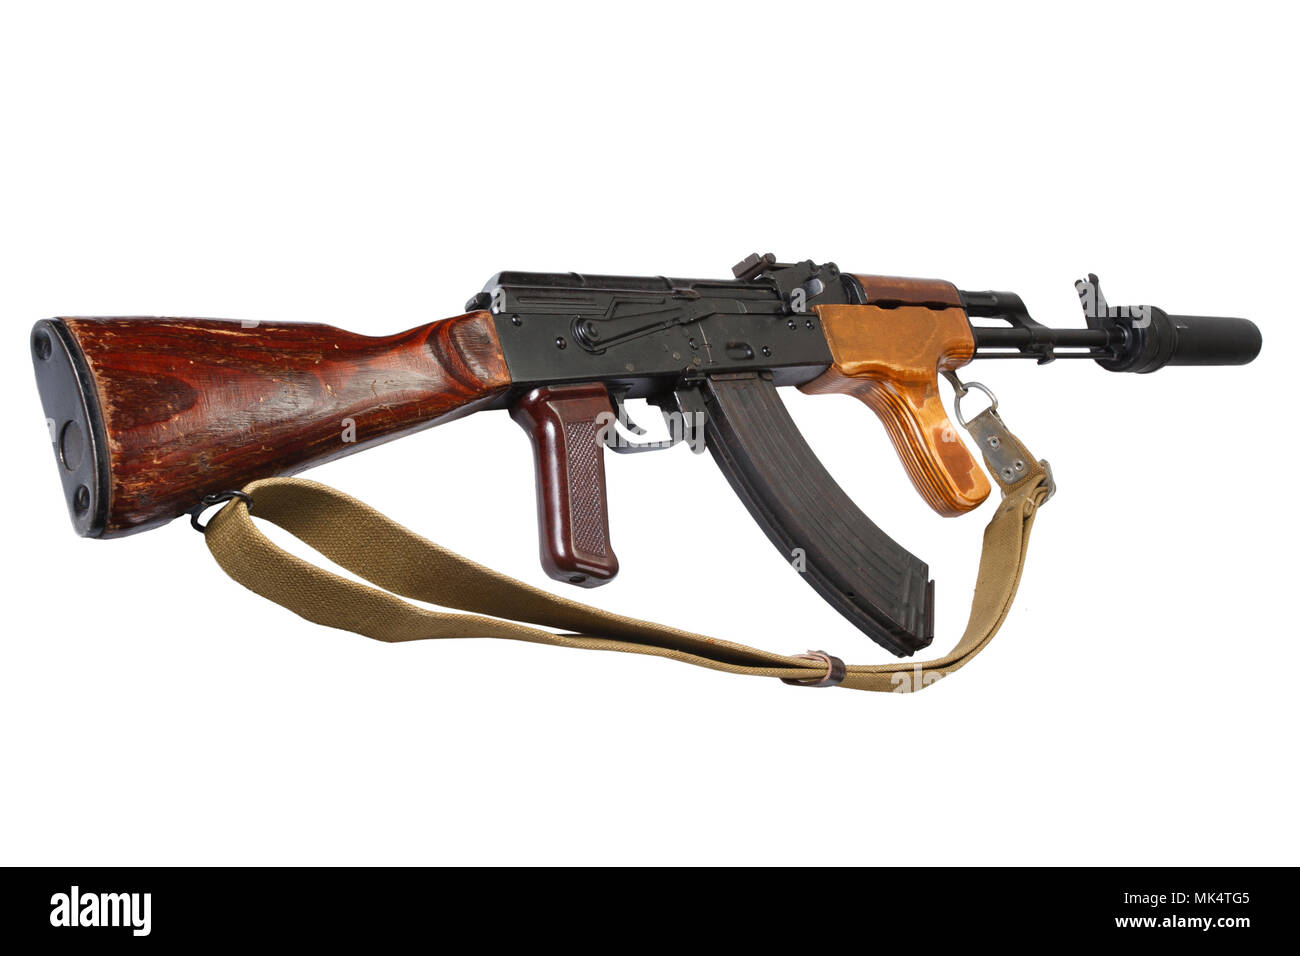 Kalaschnikow AK 47 rumänische Version mit Sound suppressor (Schalldämpfer)  auf weißem Hintergrund Stockfotografie - Alamy